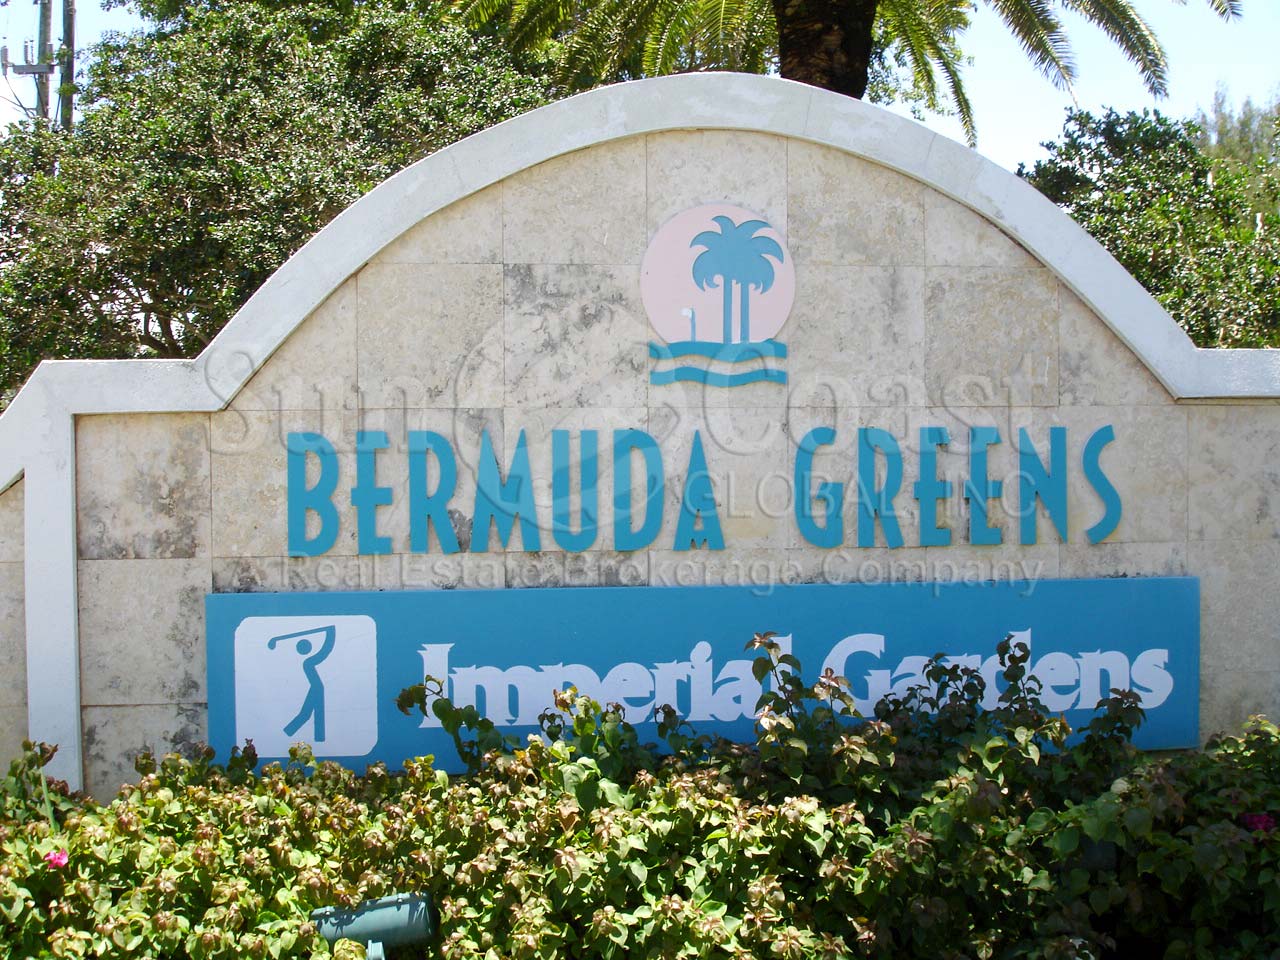 Bermuda Greens sign